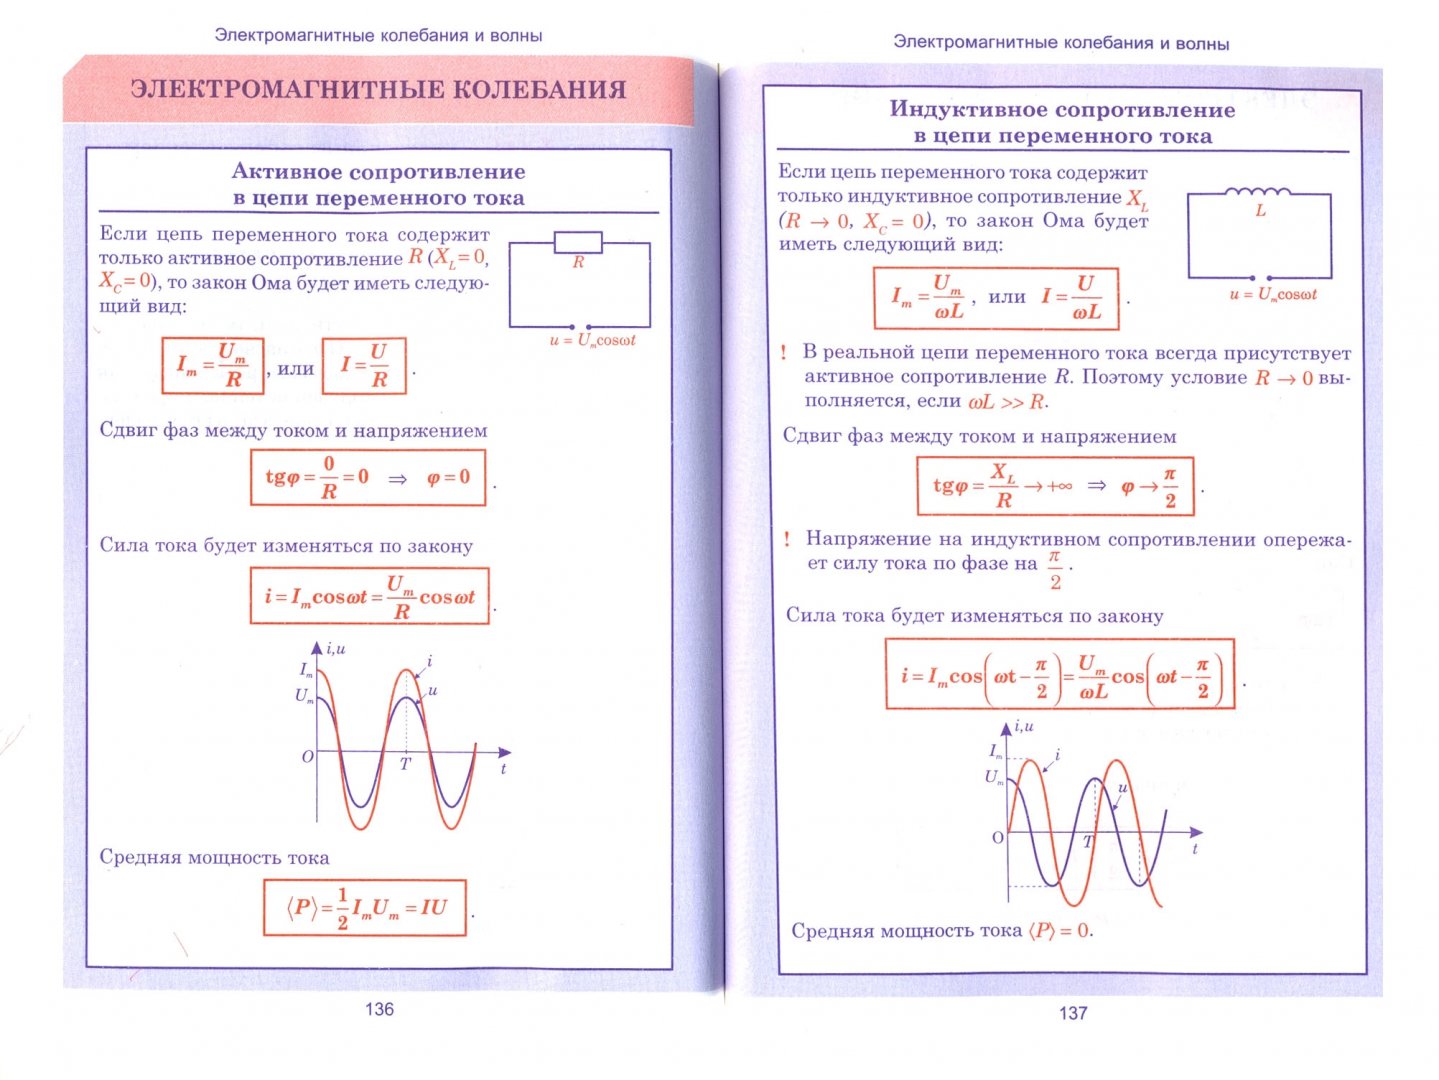 Волны егэ. Электромагнитные колебания и волны 11 класс формулы физика. Электромагнитные колебания и волны формулы 11 класс. Вся физика в таблицах. Основные формулы электромагнитных колебаний.